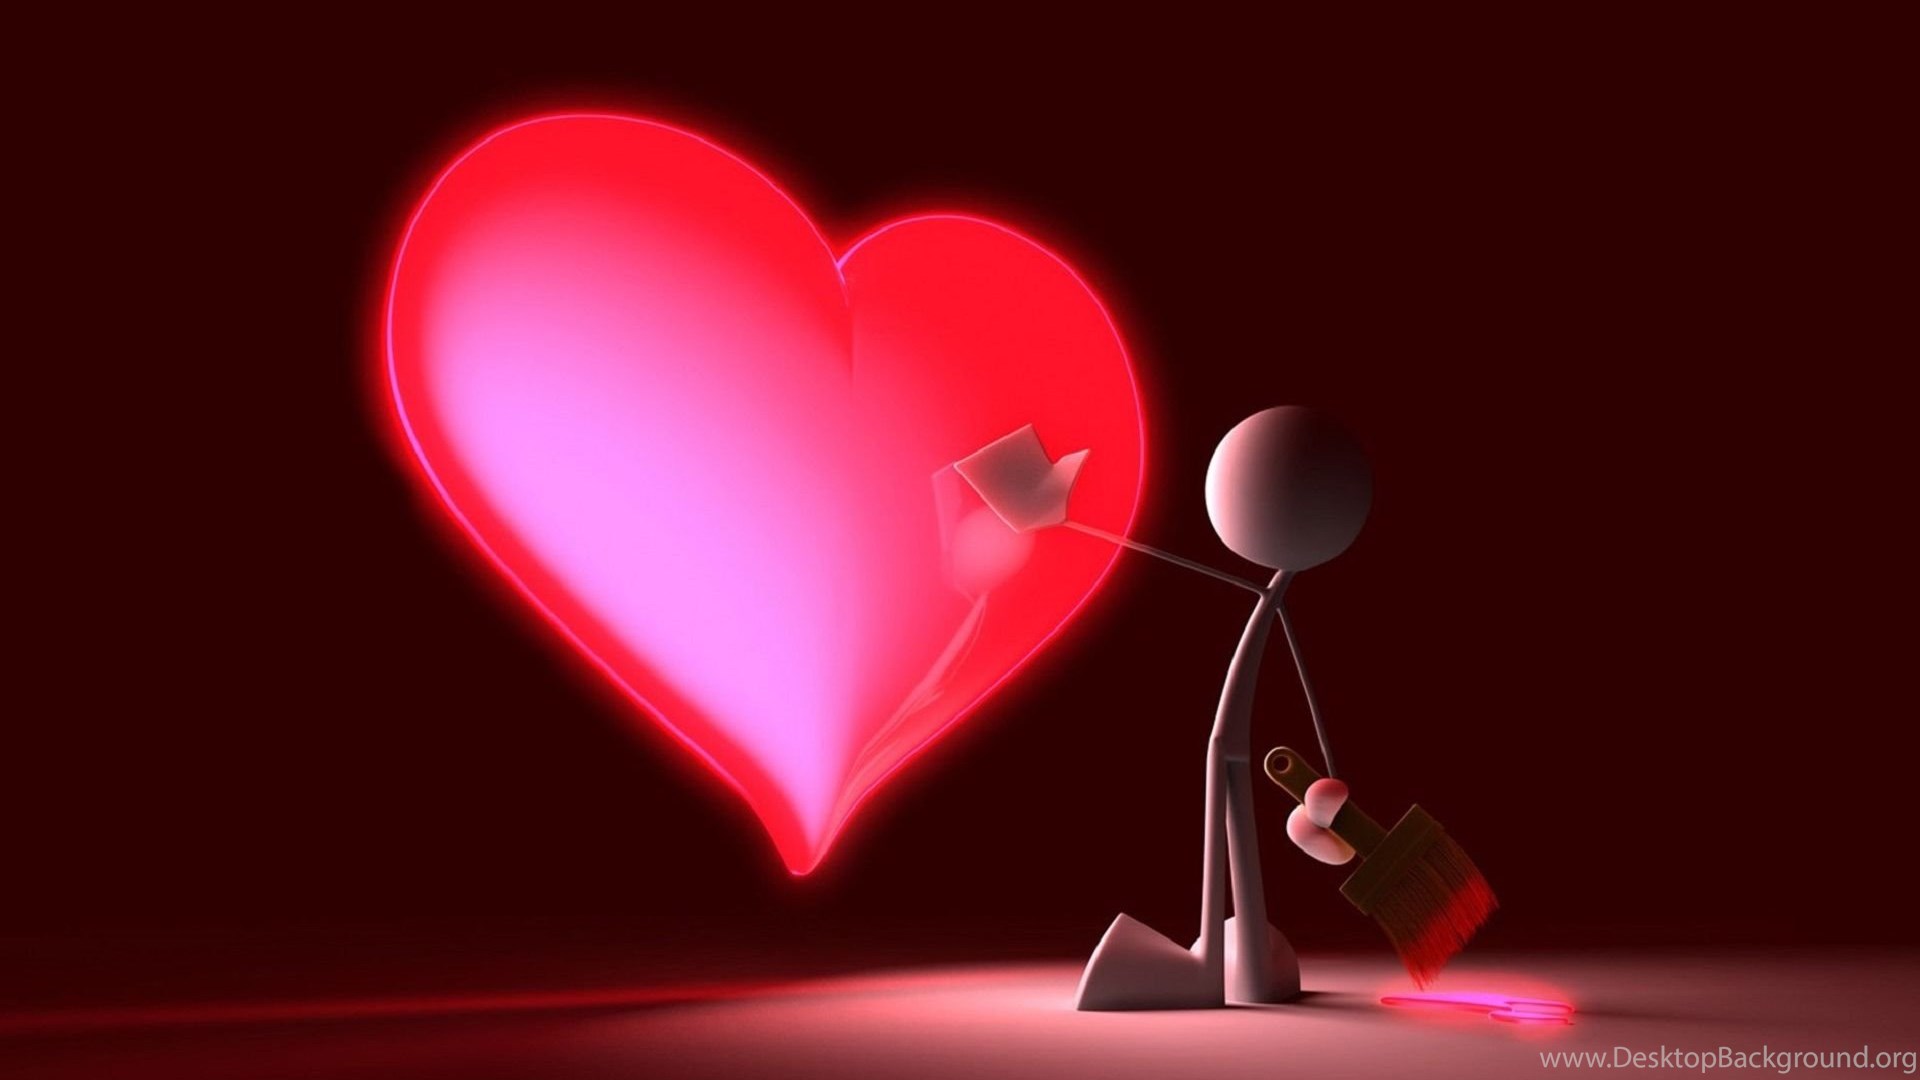 Beautiful Love Heart 3d Hd Widescreen Wallpapers Desktop Background